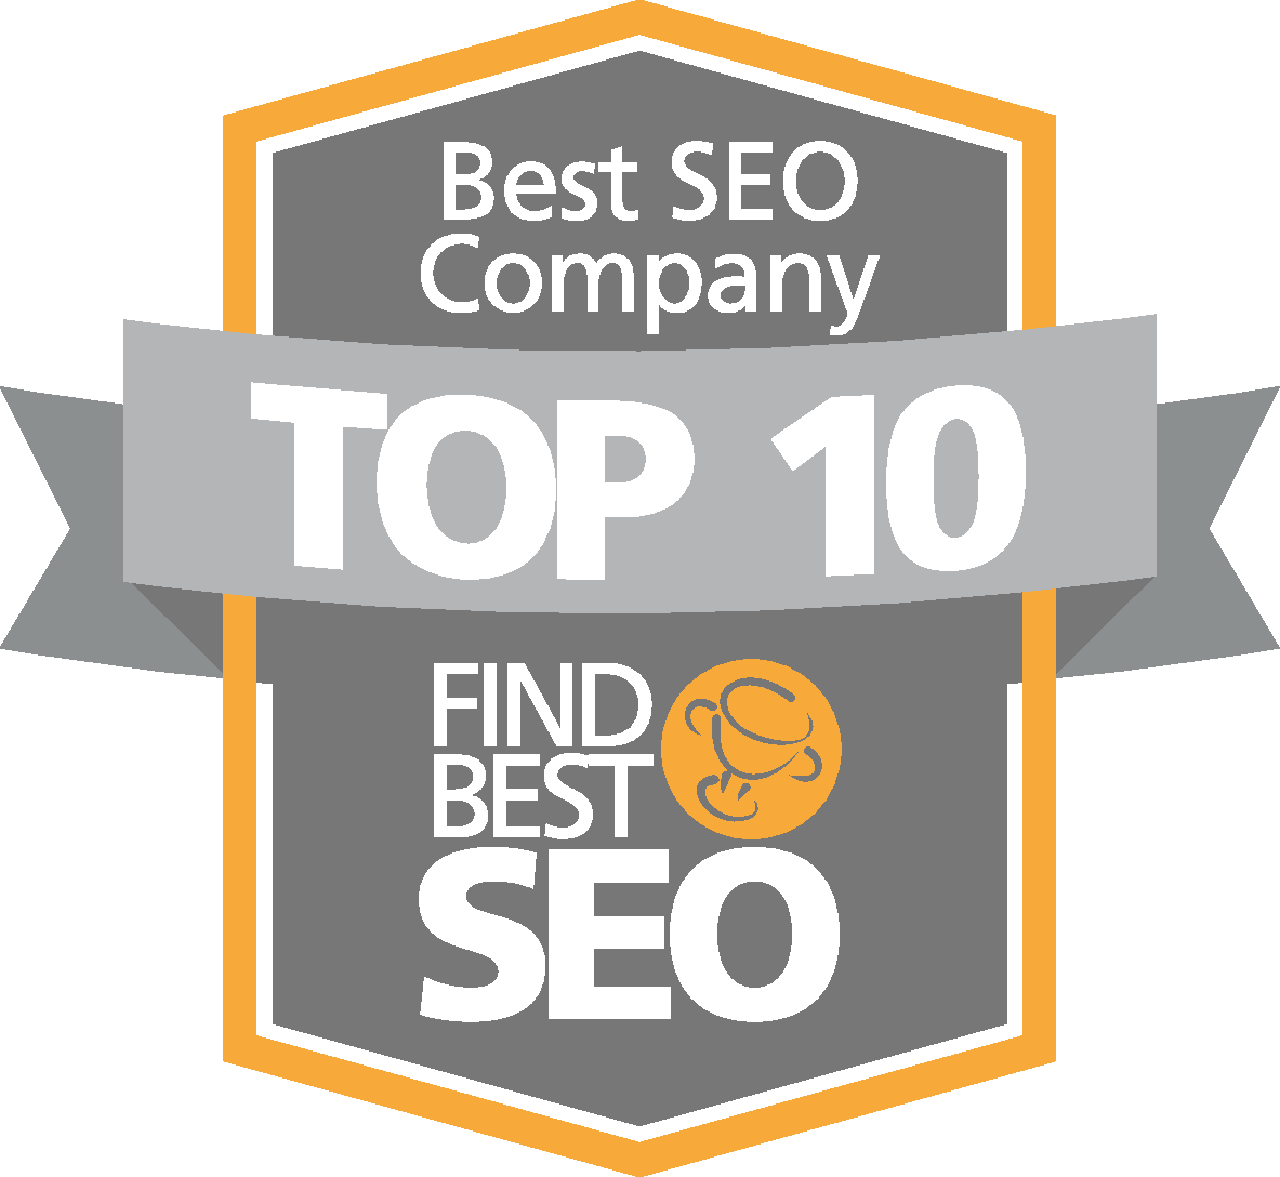 L'agenzia PBJ Marketing di District of Columbia, United States ha vinto il riconoscimento FindBestSEO's Top 10 SEO Company